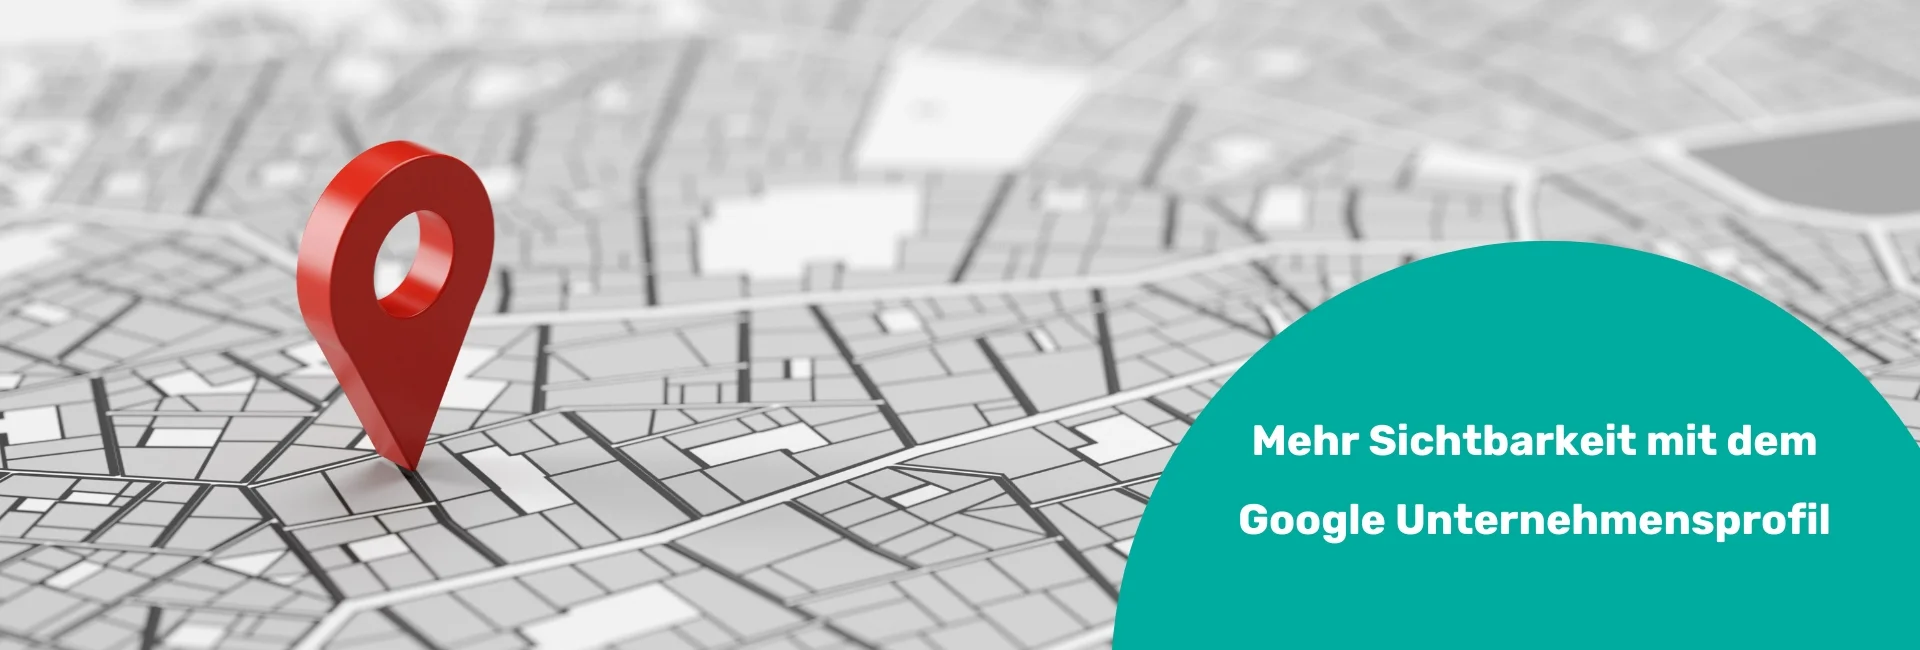 Marketingblog: mehr Sichtbarkeit mit Google Unternehmensprofil & Google Maps